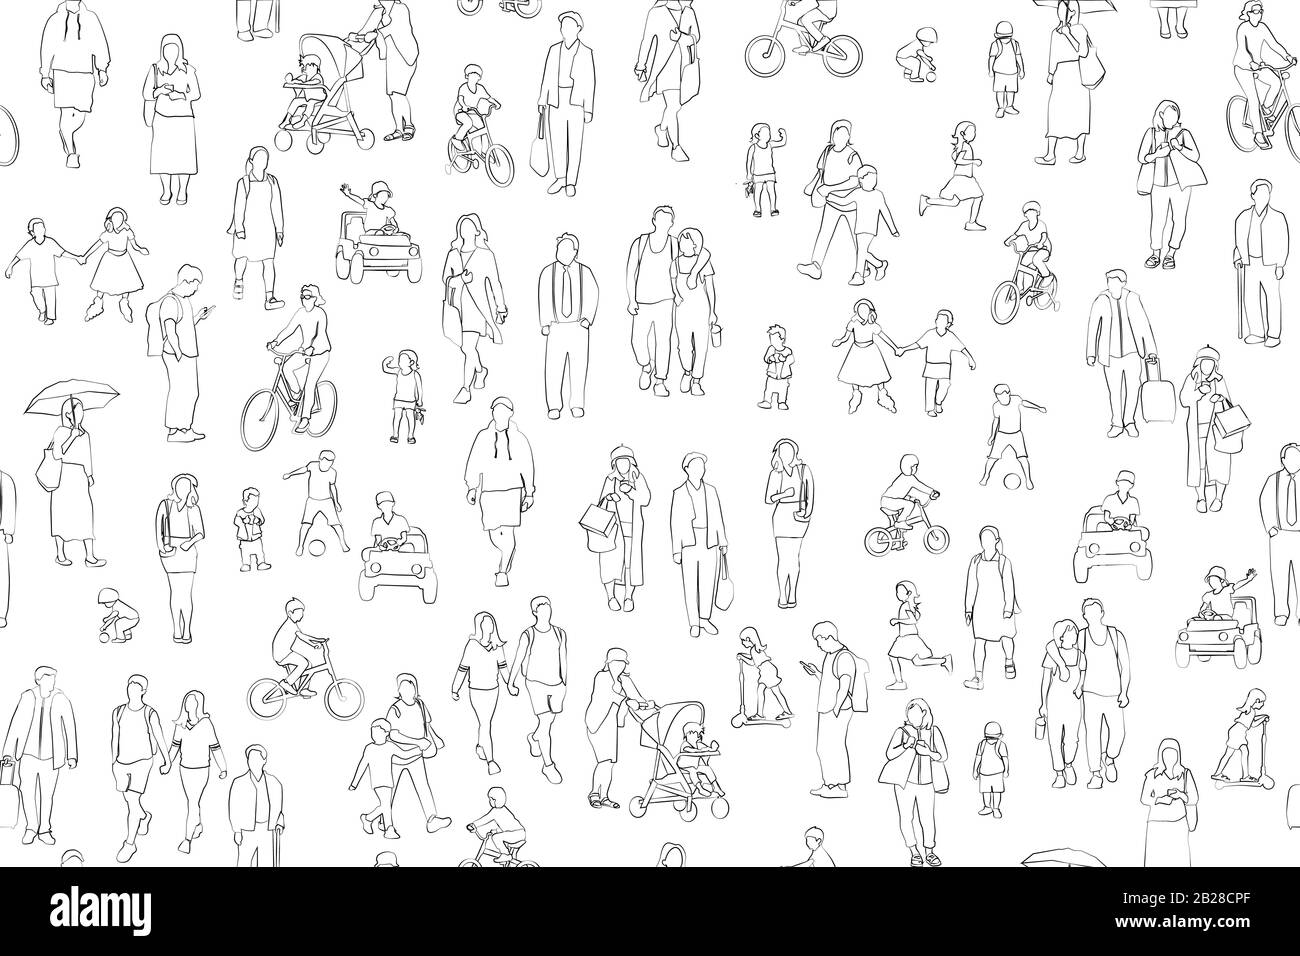 Darstellung der Menschenmenge . Gruppe von männlichen und weiblichen Erwachsenen- und Kinder-Zeichentrickfiguren auf weißem Hintergrund. Stockfoto